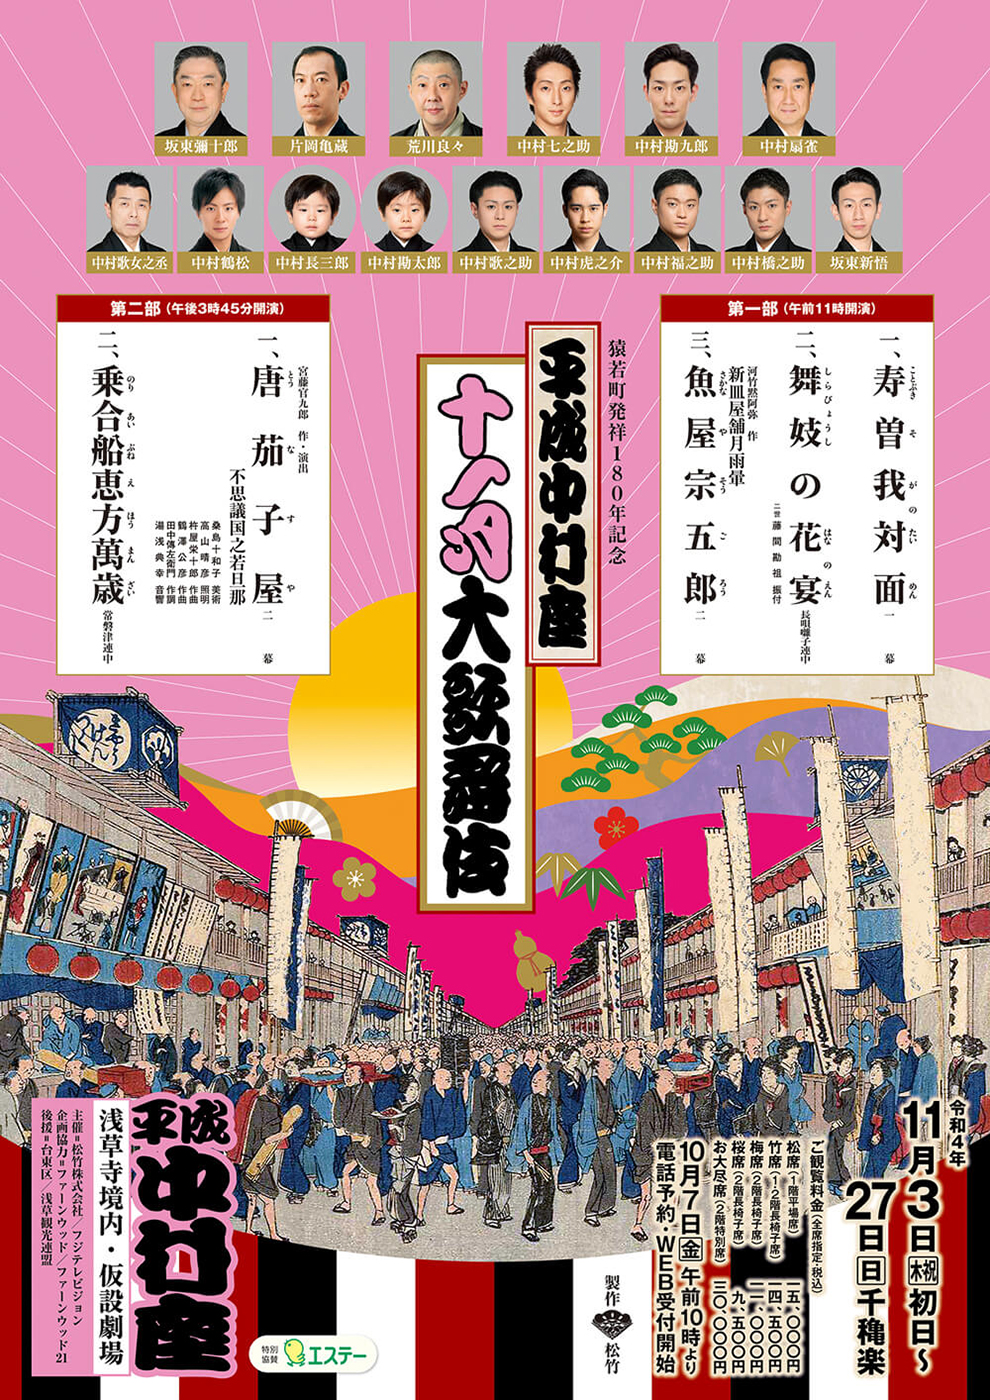 平成中村座十一月大歌舞伎 第二部『唐茄子屋』『乗合船恵方萬歳』